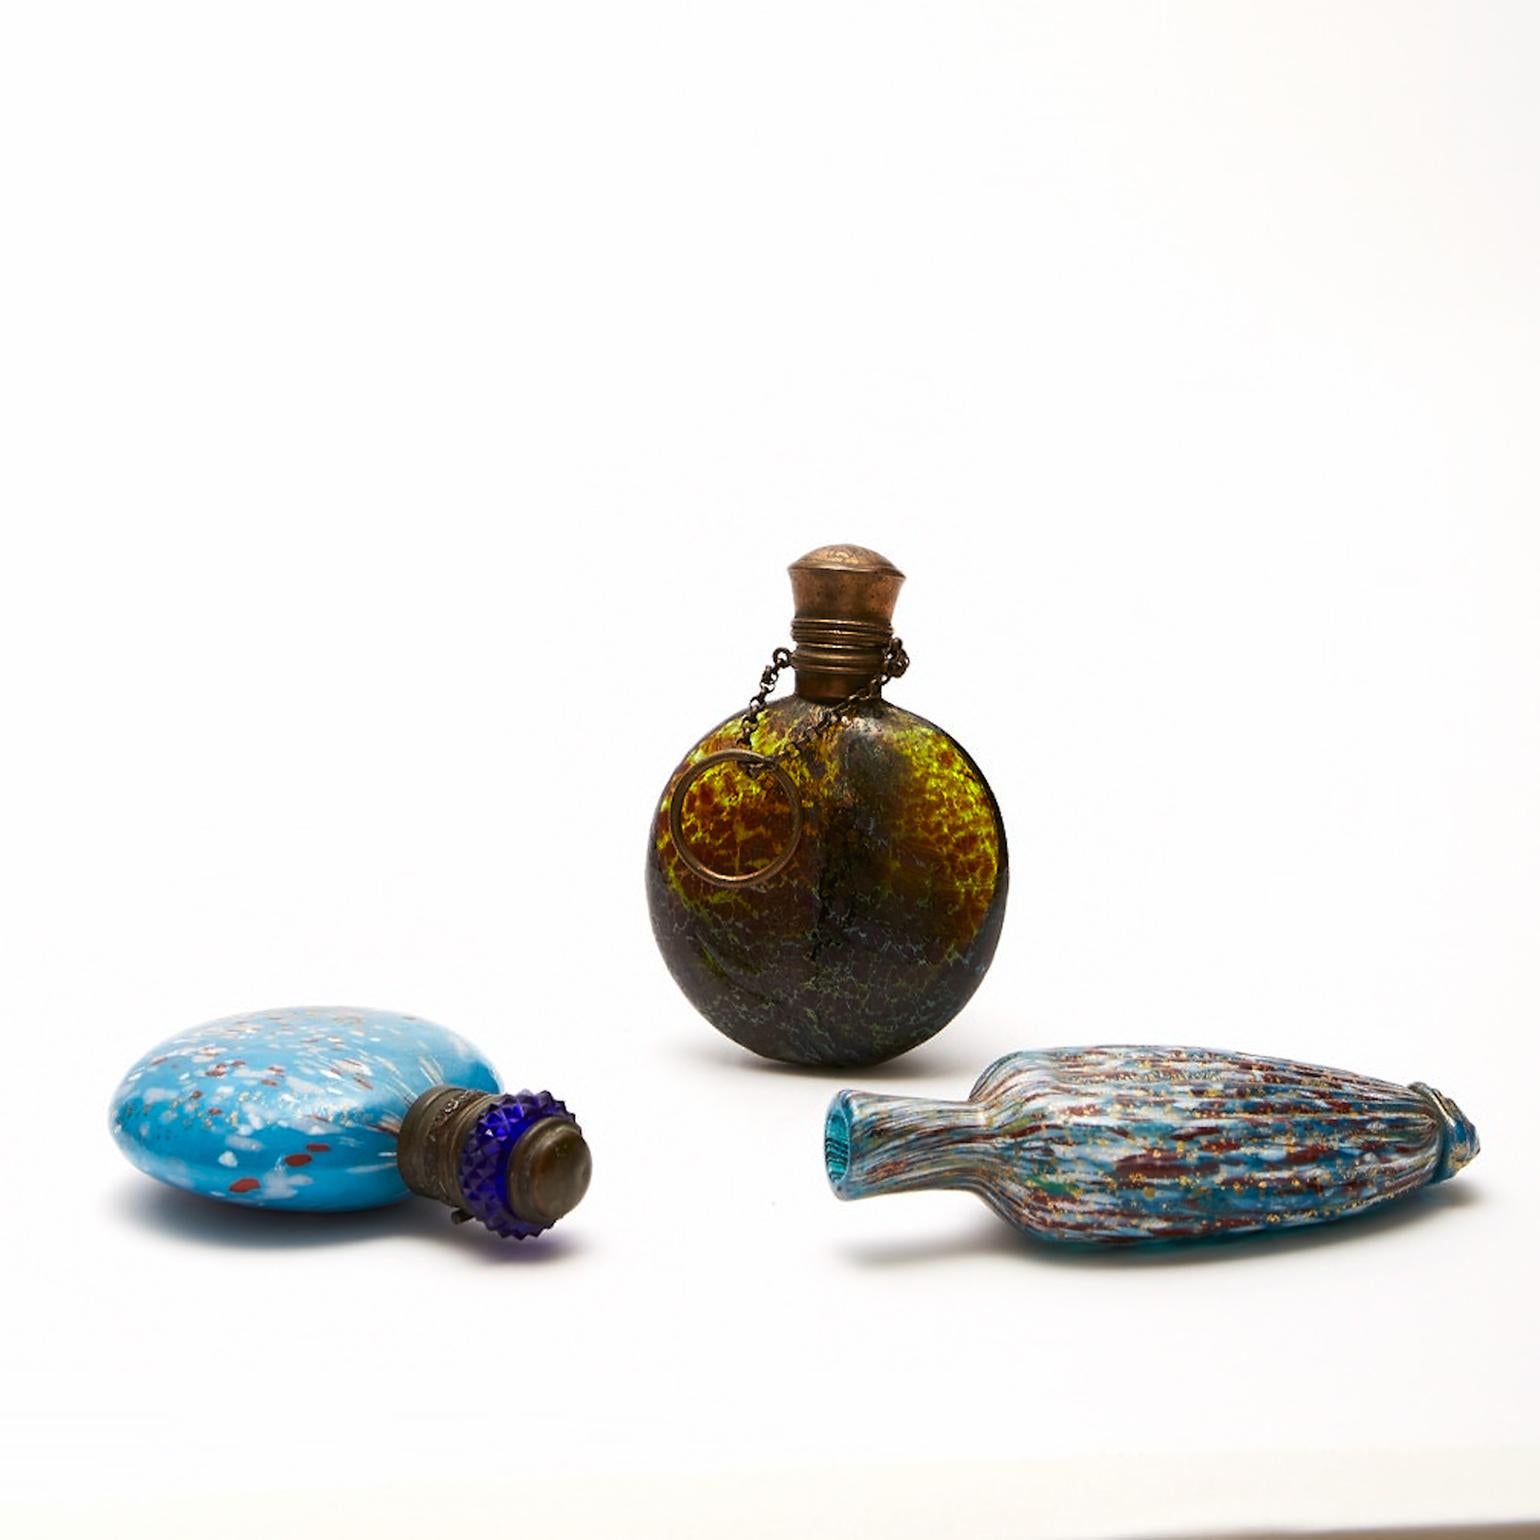 Vier Chatelaine Venetian Scent Bottles circa 1870-1890 mundgeblasenes Glas, hergestellt von den Glasmeistern des späten 19. Jahrhunderts in Murano.
Die drei kleinsten sind innen mit Goldpulver verziert und zwei von ihnen haben vergoldete